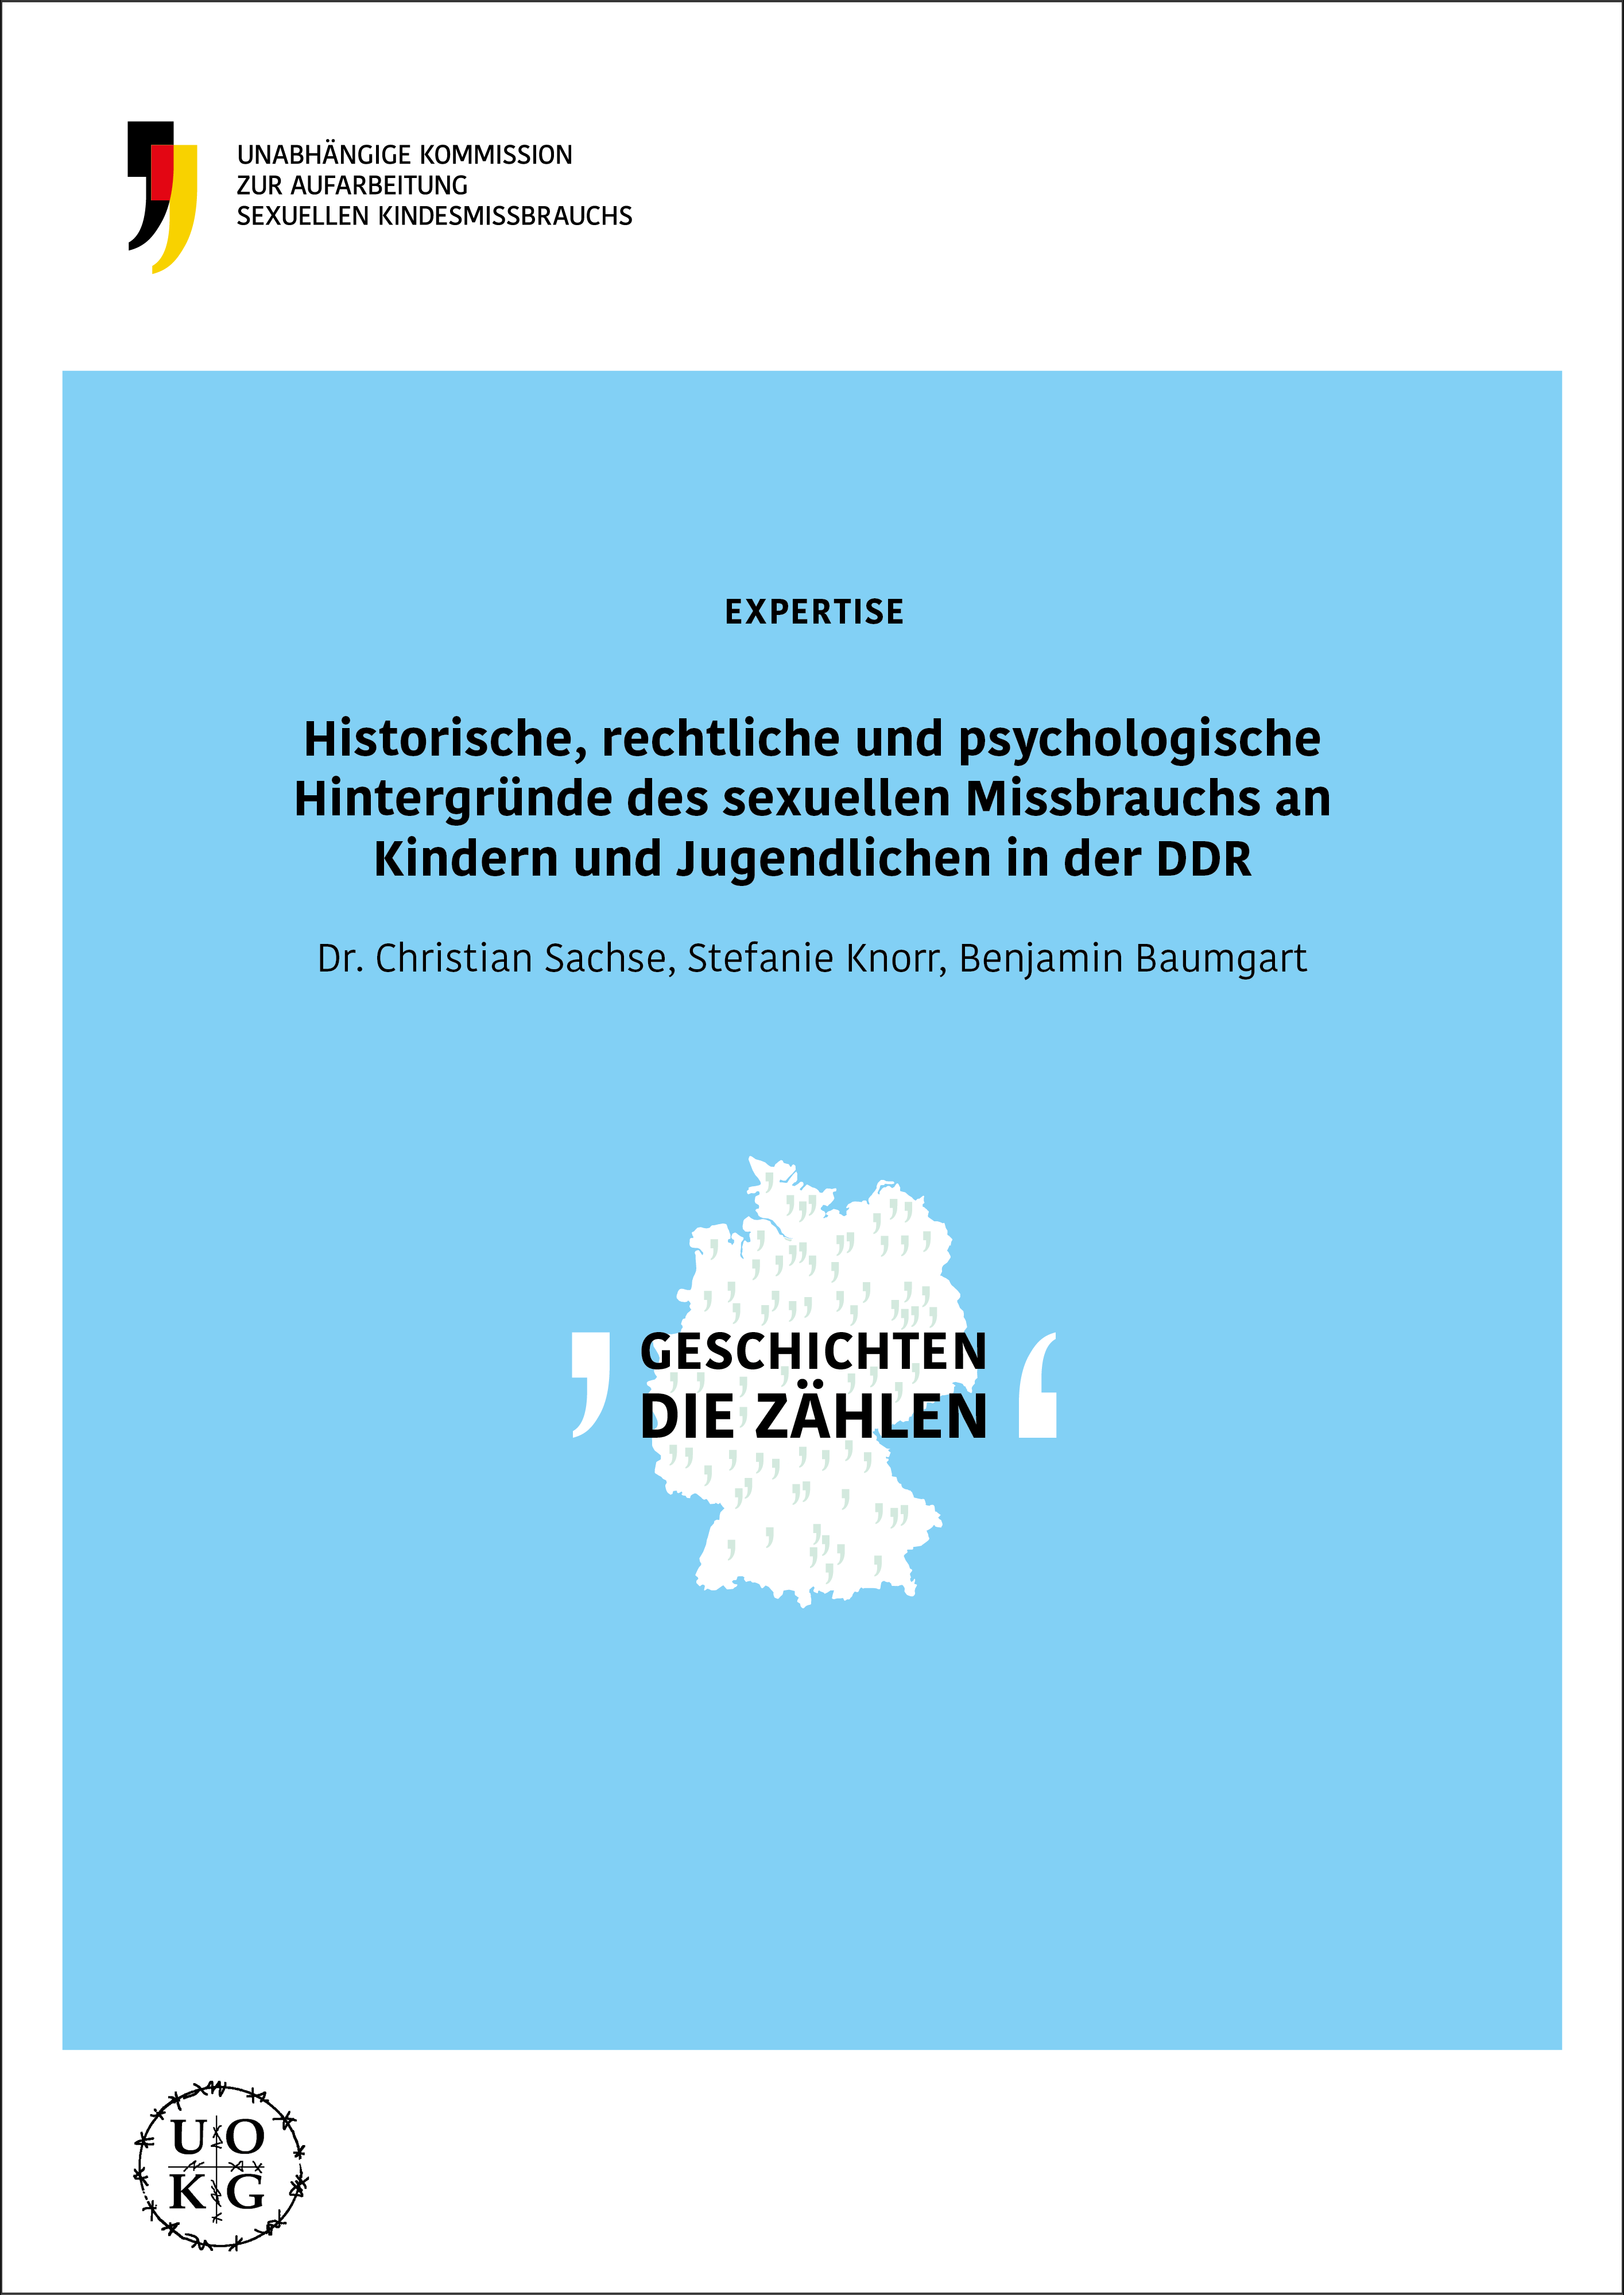 Cover der Expertise. Darauf steht der Titel Historische, rechtliche und psychologische Hintergründe des sexuellen Missbrauchs an Kindern und Jugendlichen in der DDR